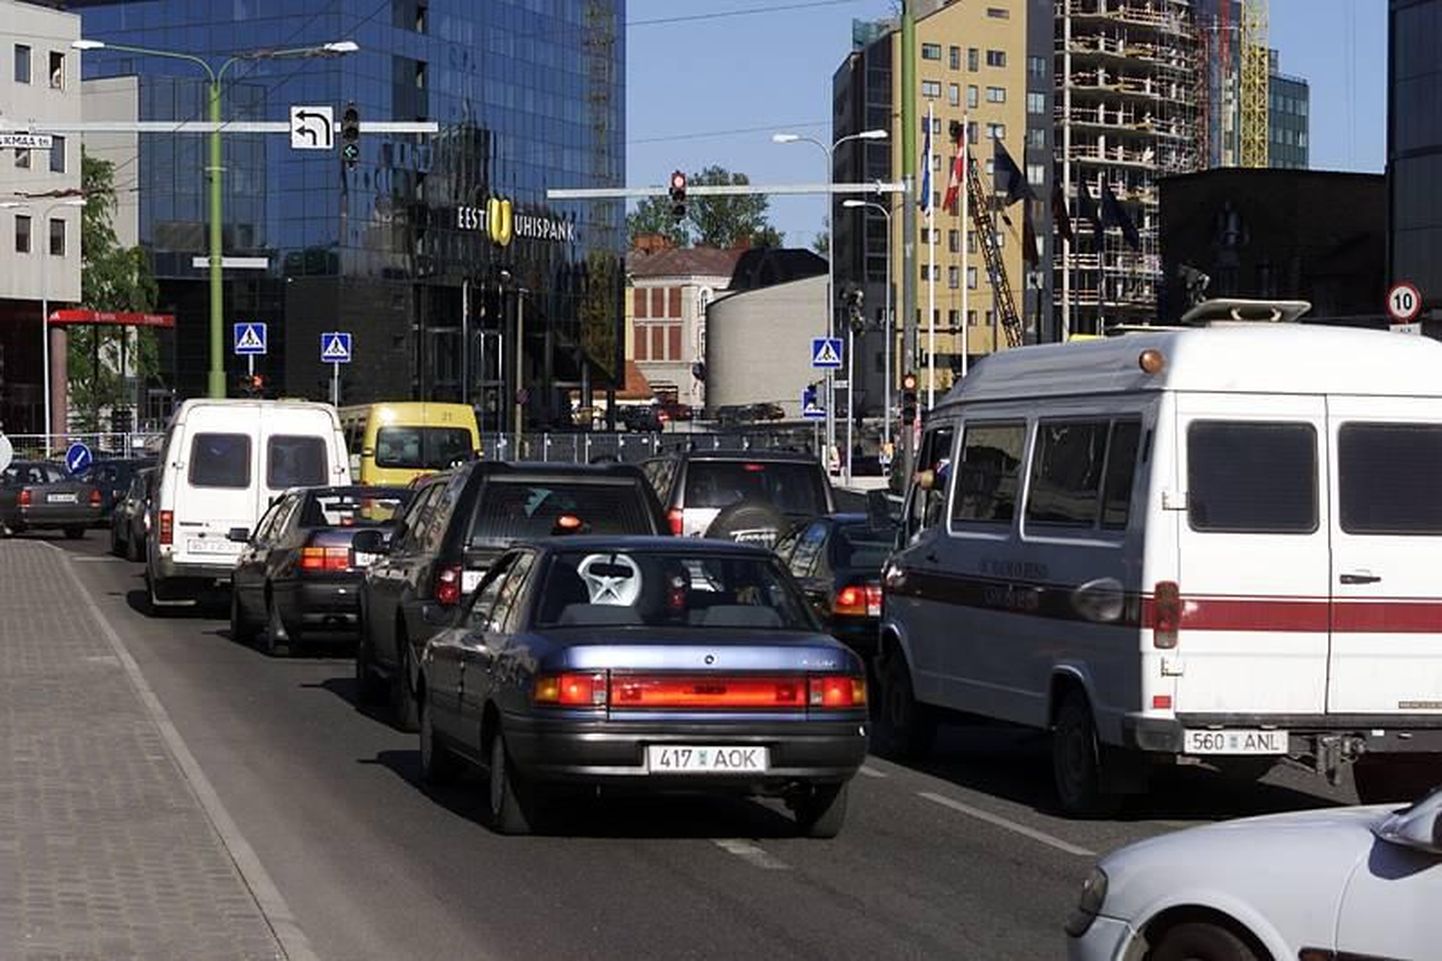 Järgmisel nädalal toimuv ministrite kohtumine muudab kesklinna liikluse pingeliseks.